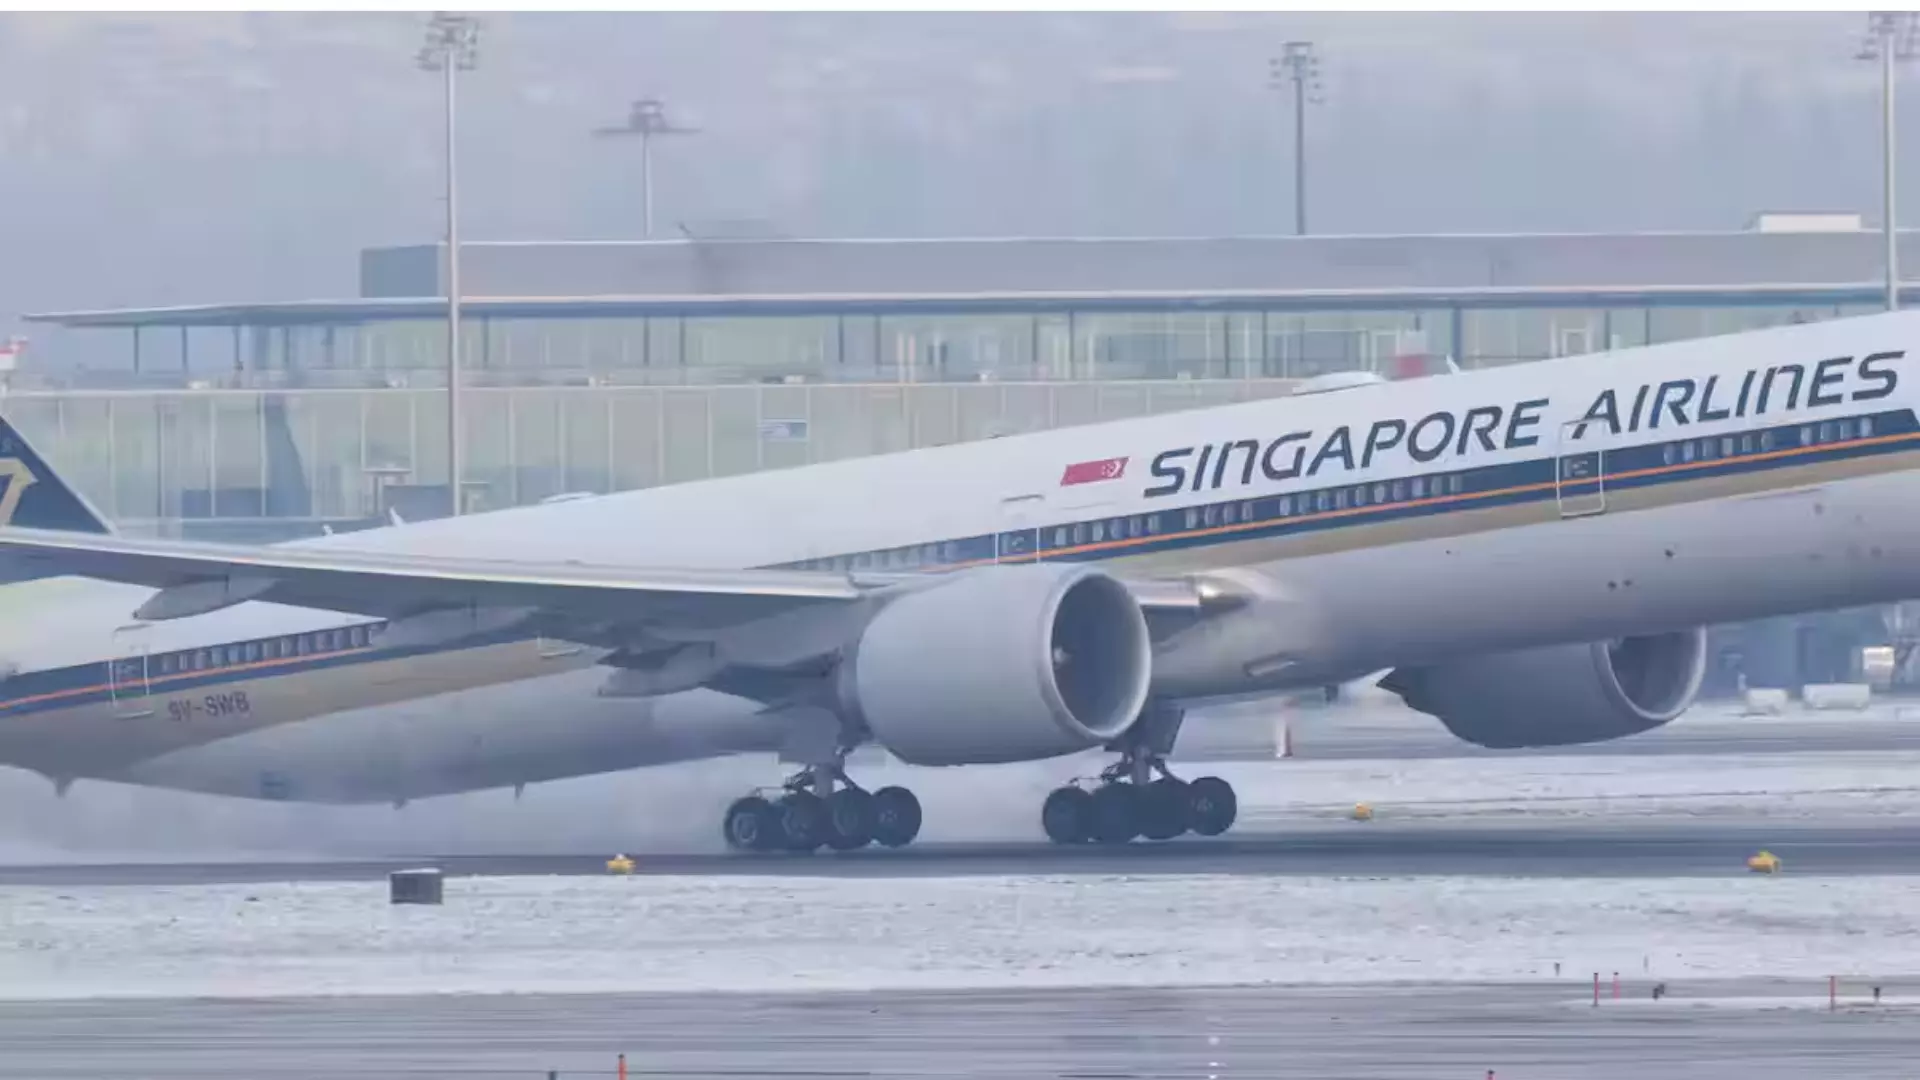 Singapore Airlines turbulence: लंदन से सिंगापुर एयरलाइंस की उड़ान में भीषण टर्बुलेंस से 1 पैसेंजर की मौत, कई घायल, बैंकॉक में हुई इमरजेंसी लैंडिंग